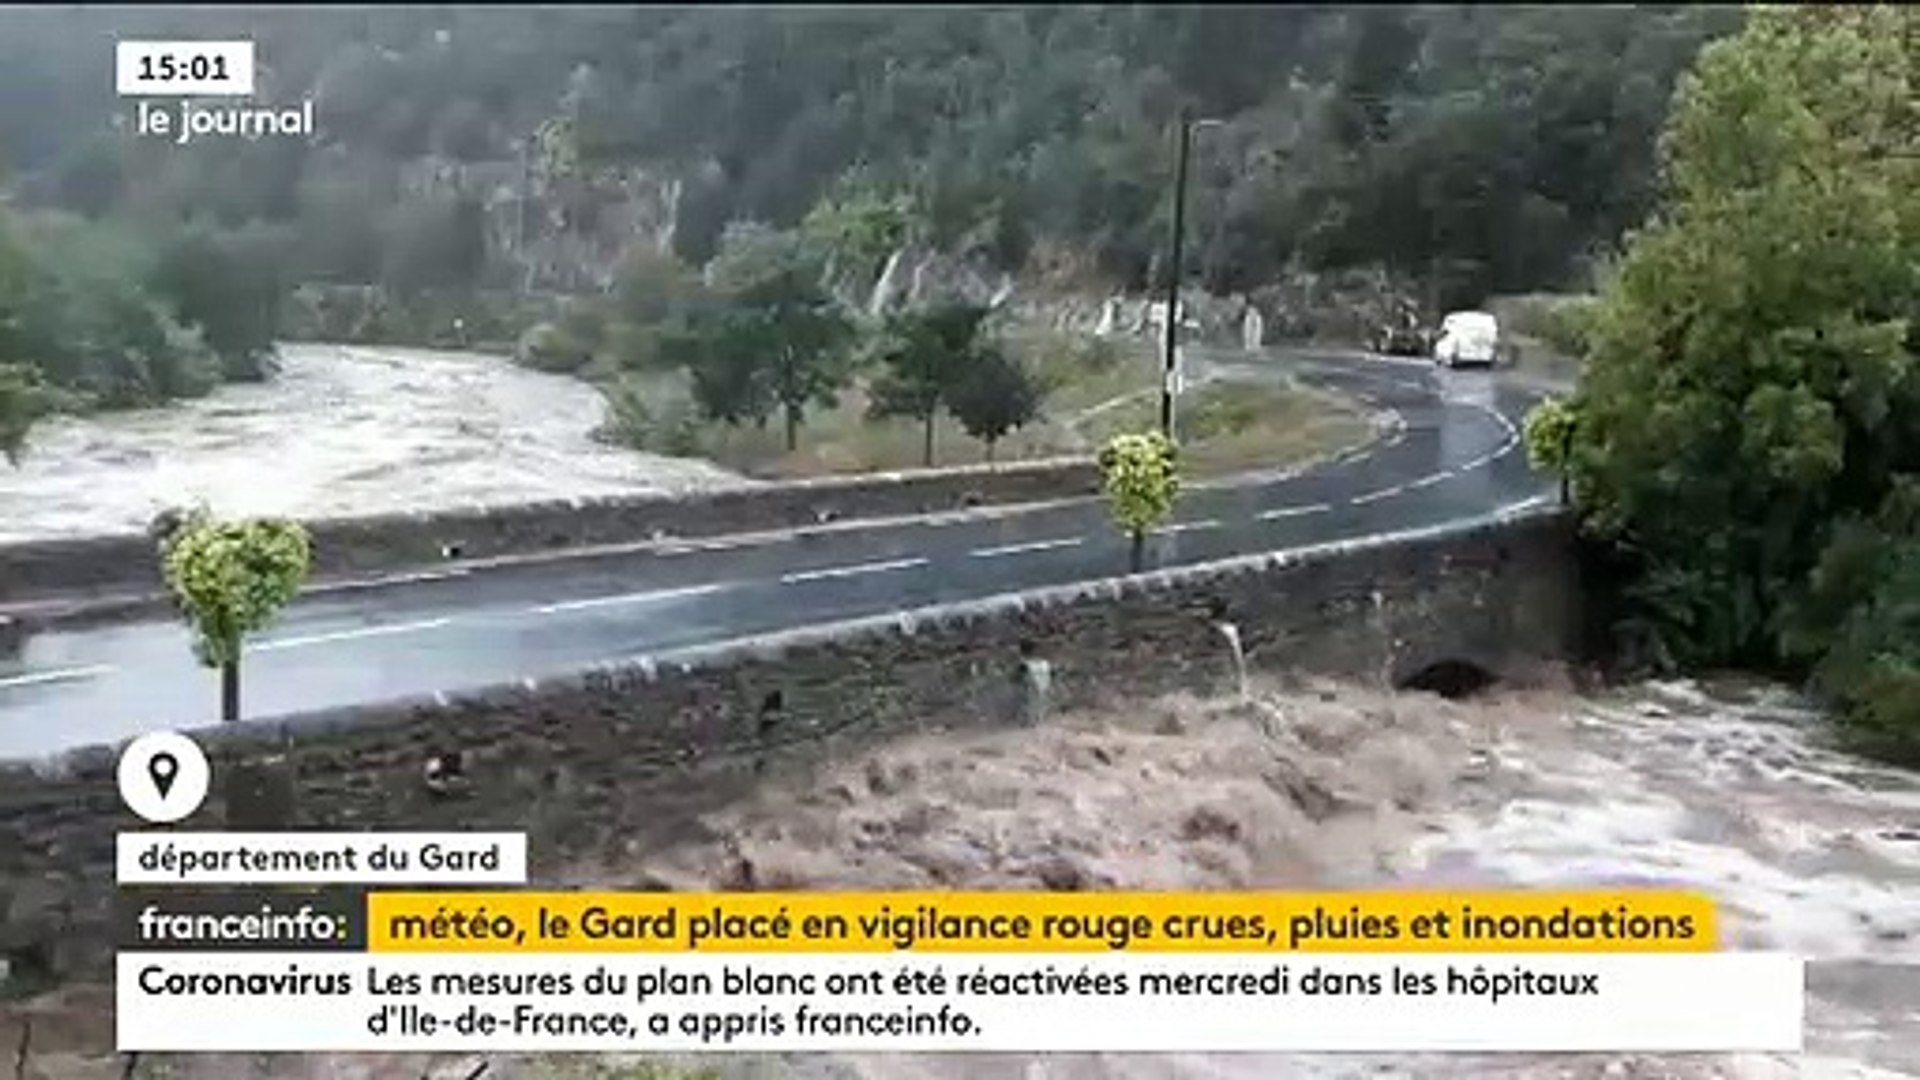 Premières images du Gard placé en vigilance rouge pour pluie-inondation et  crues - L'Hérault et la Lozère restent en vigilance orange pour pluie-inondation  - Vidéo Dailymotion